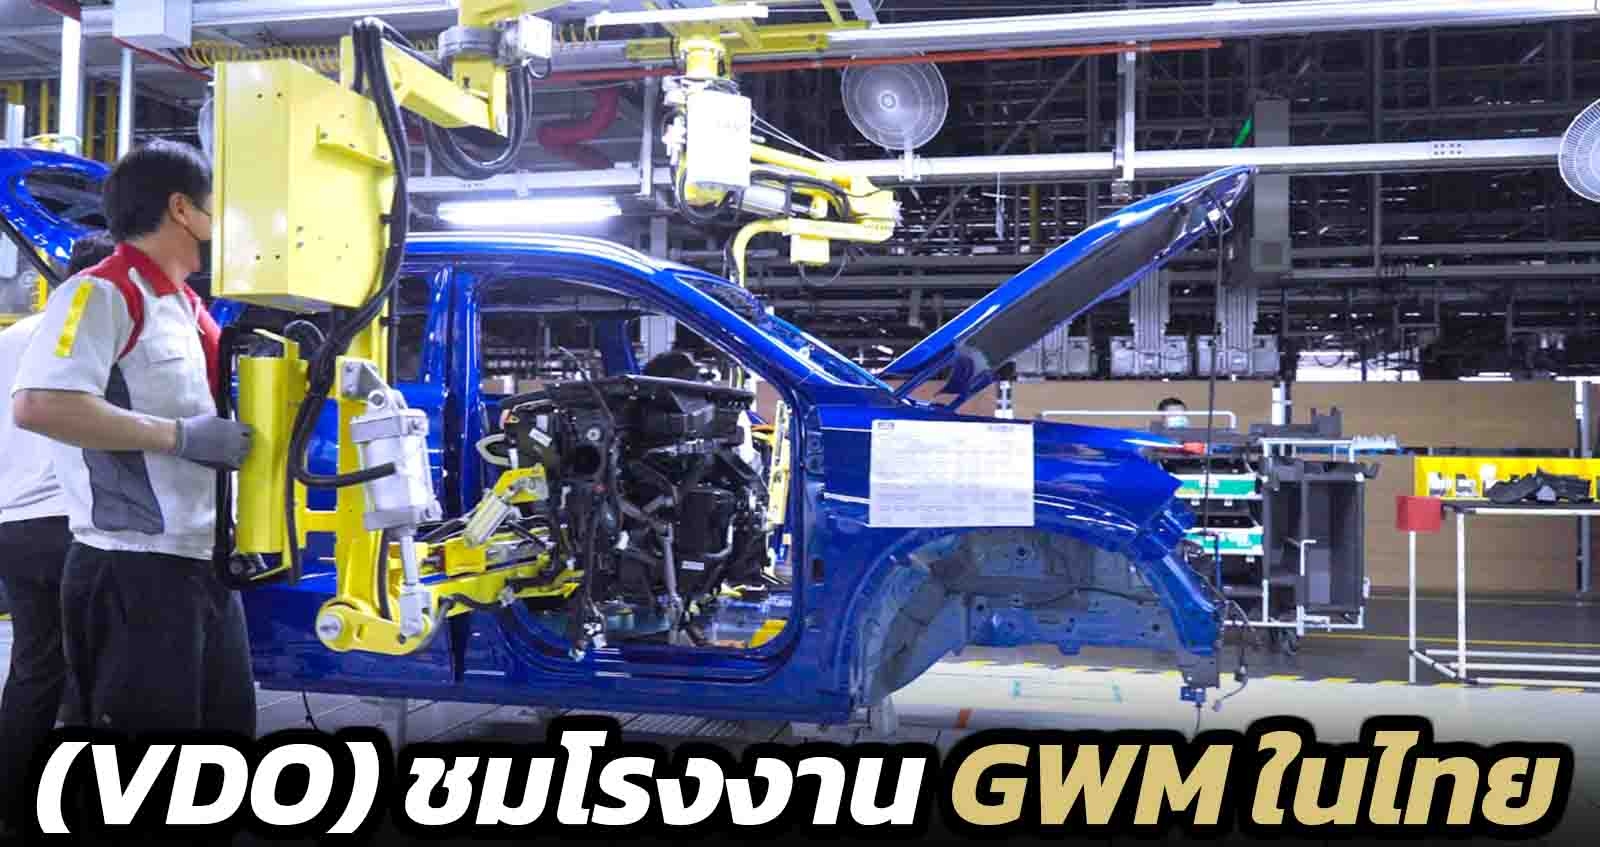 (VDO) ชมโรงงาน GWM ในไทย พร้อมเปิดตัวอย่างเป็นทางการ